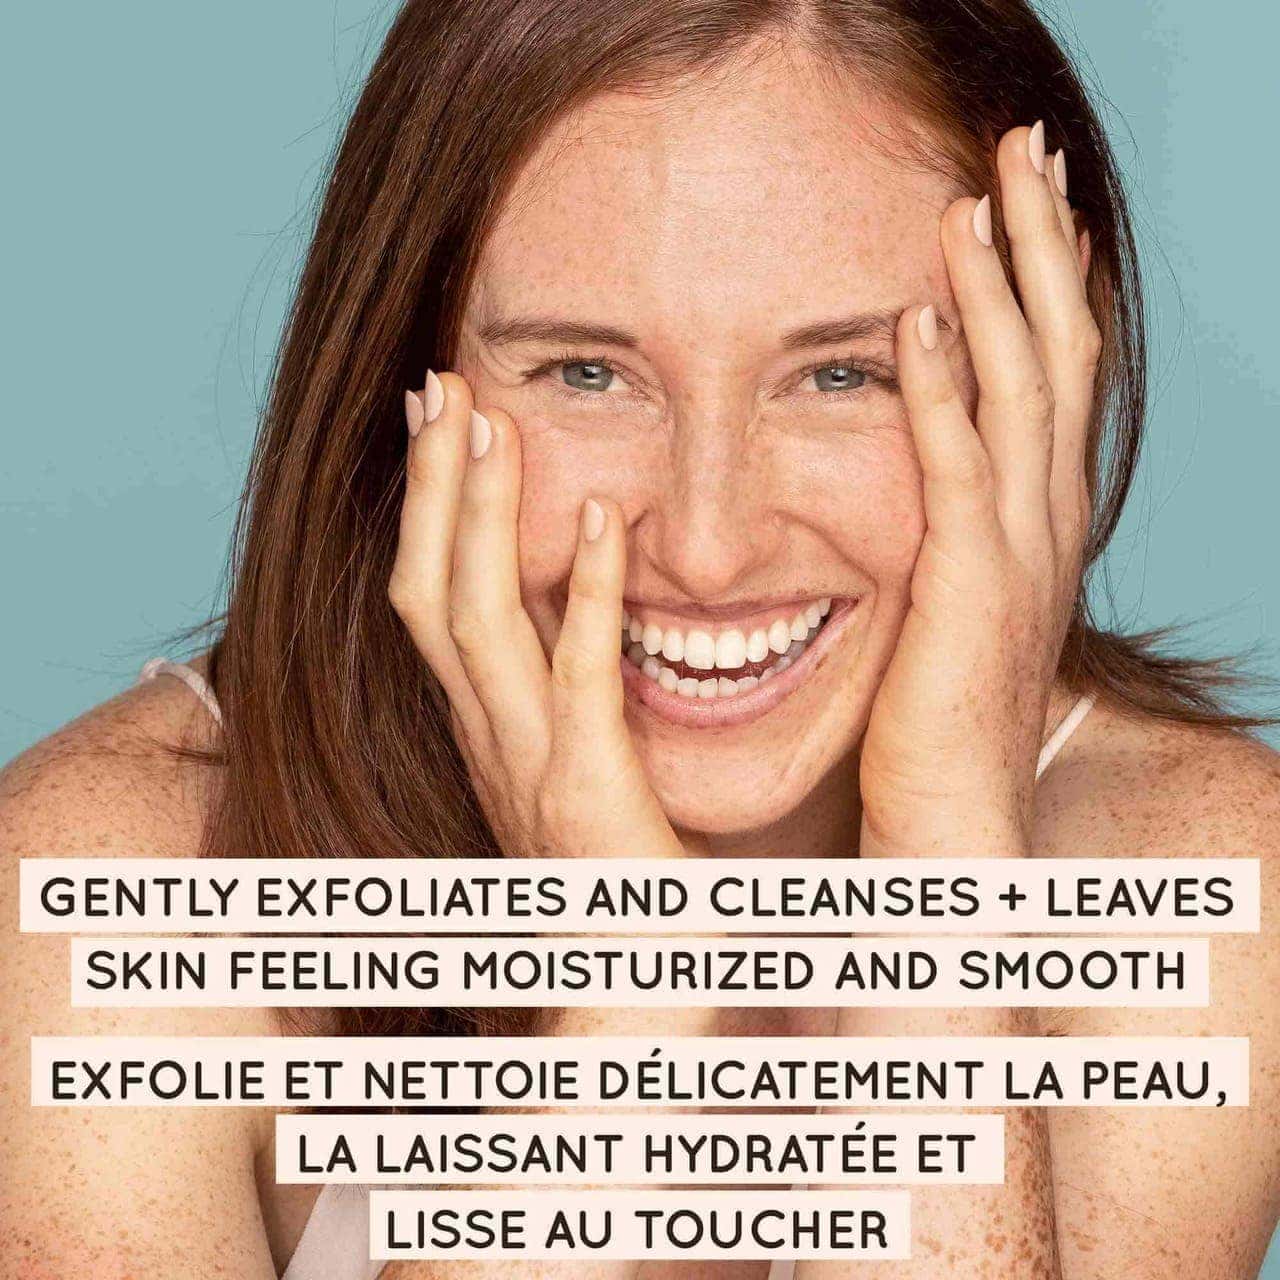 Image d'une femme souriante, accompagnée d'un texte indiquant que le produit exfolie et nettoie délicatement la peau.